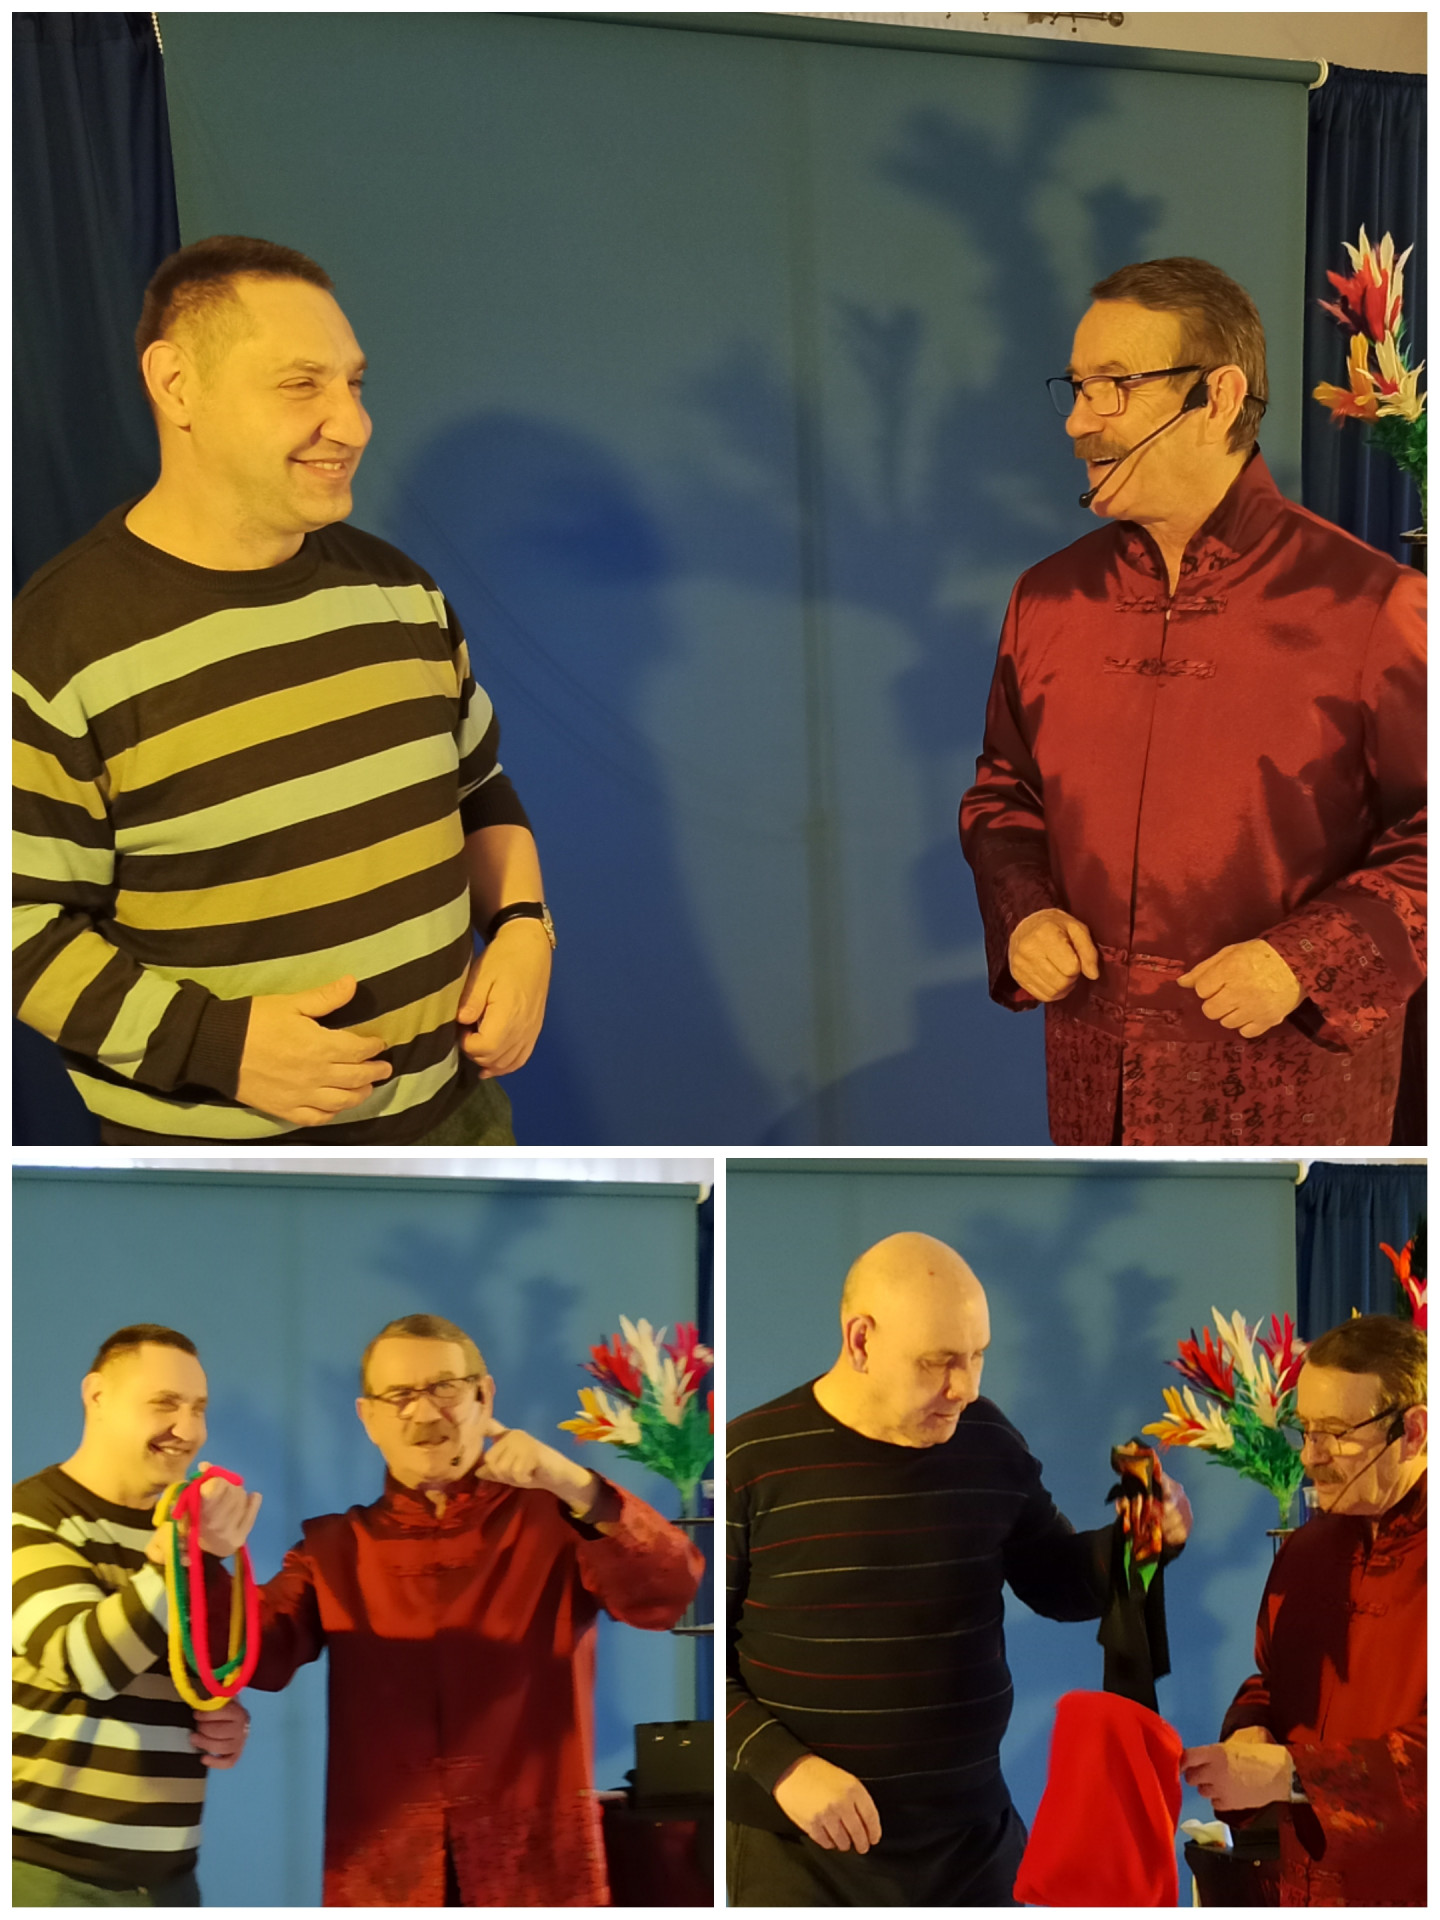 Kolaż złożony z trzech zdjęć  przedstawiających uśmiechniętych podopiecznych - Adama i Ryszarda biorących udział w pokazie wraz z Panem  iluzjonistą. Ich  zadowolenie świadczy o sukcesie  wykonanej sztuczki.